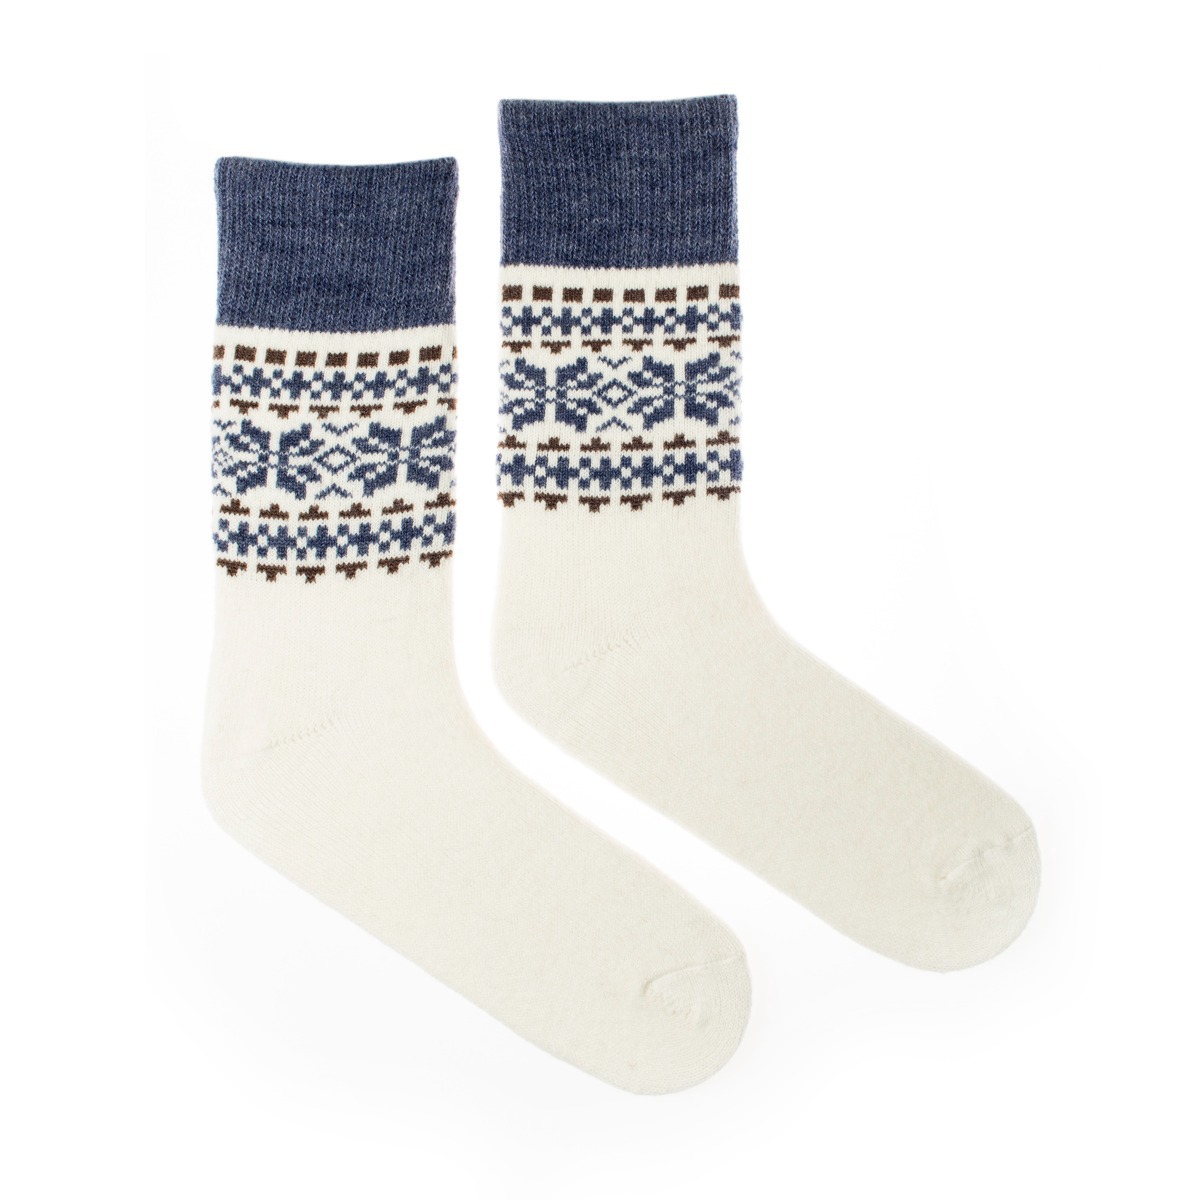 Vlnené ponožky Vlnáč Dvojvločka modrohnedý